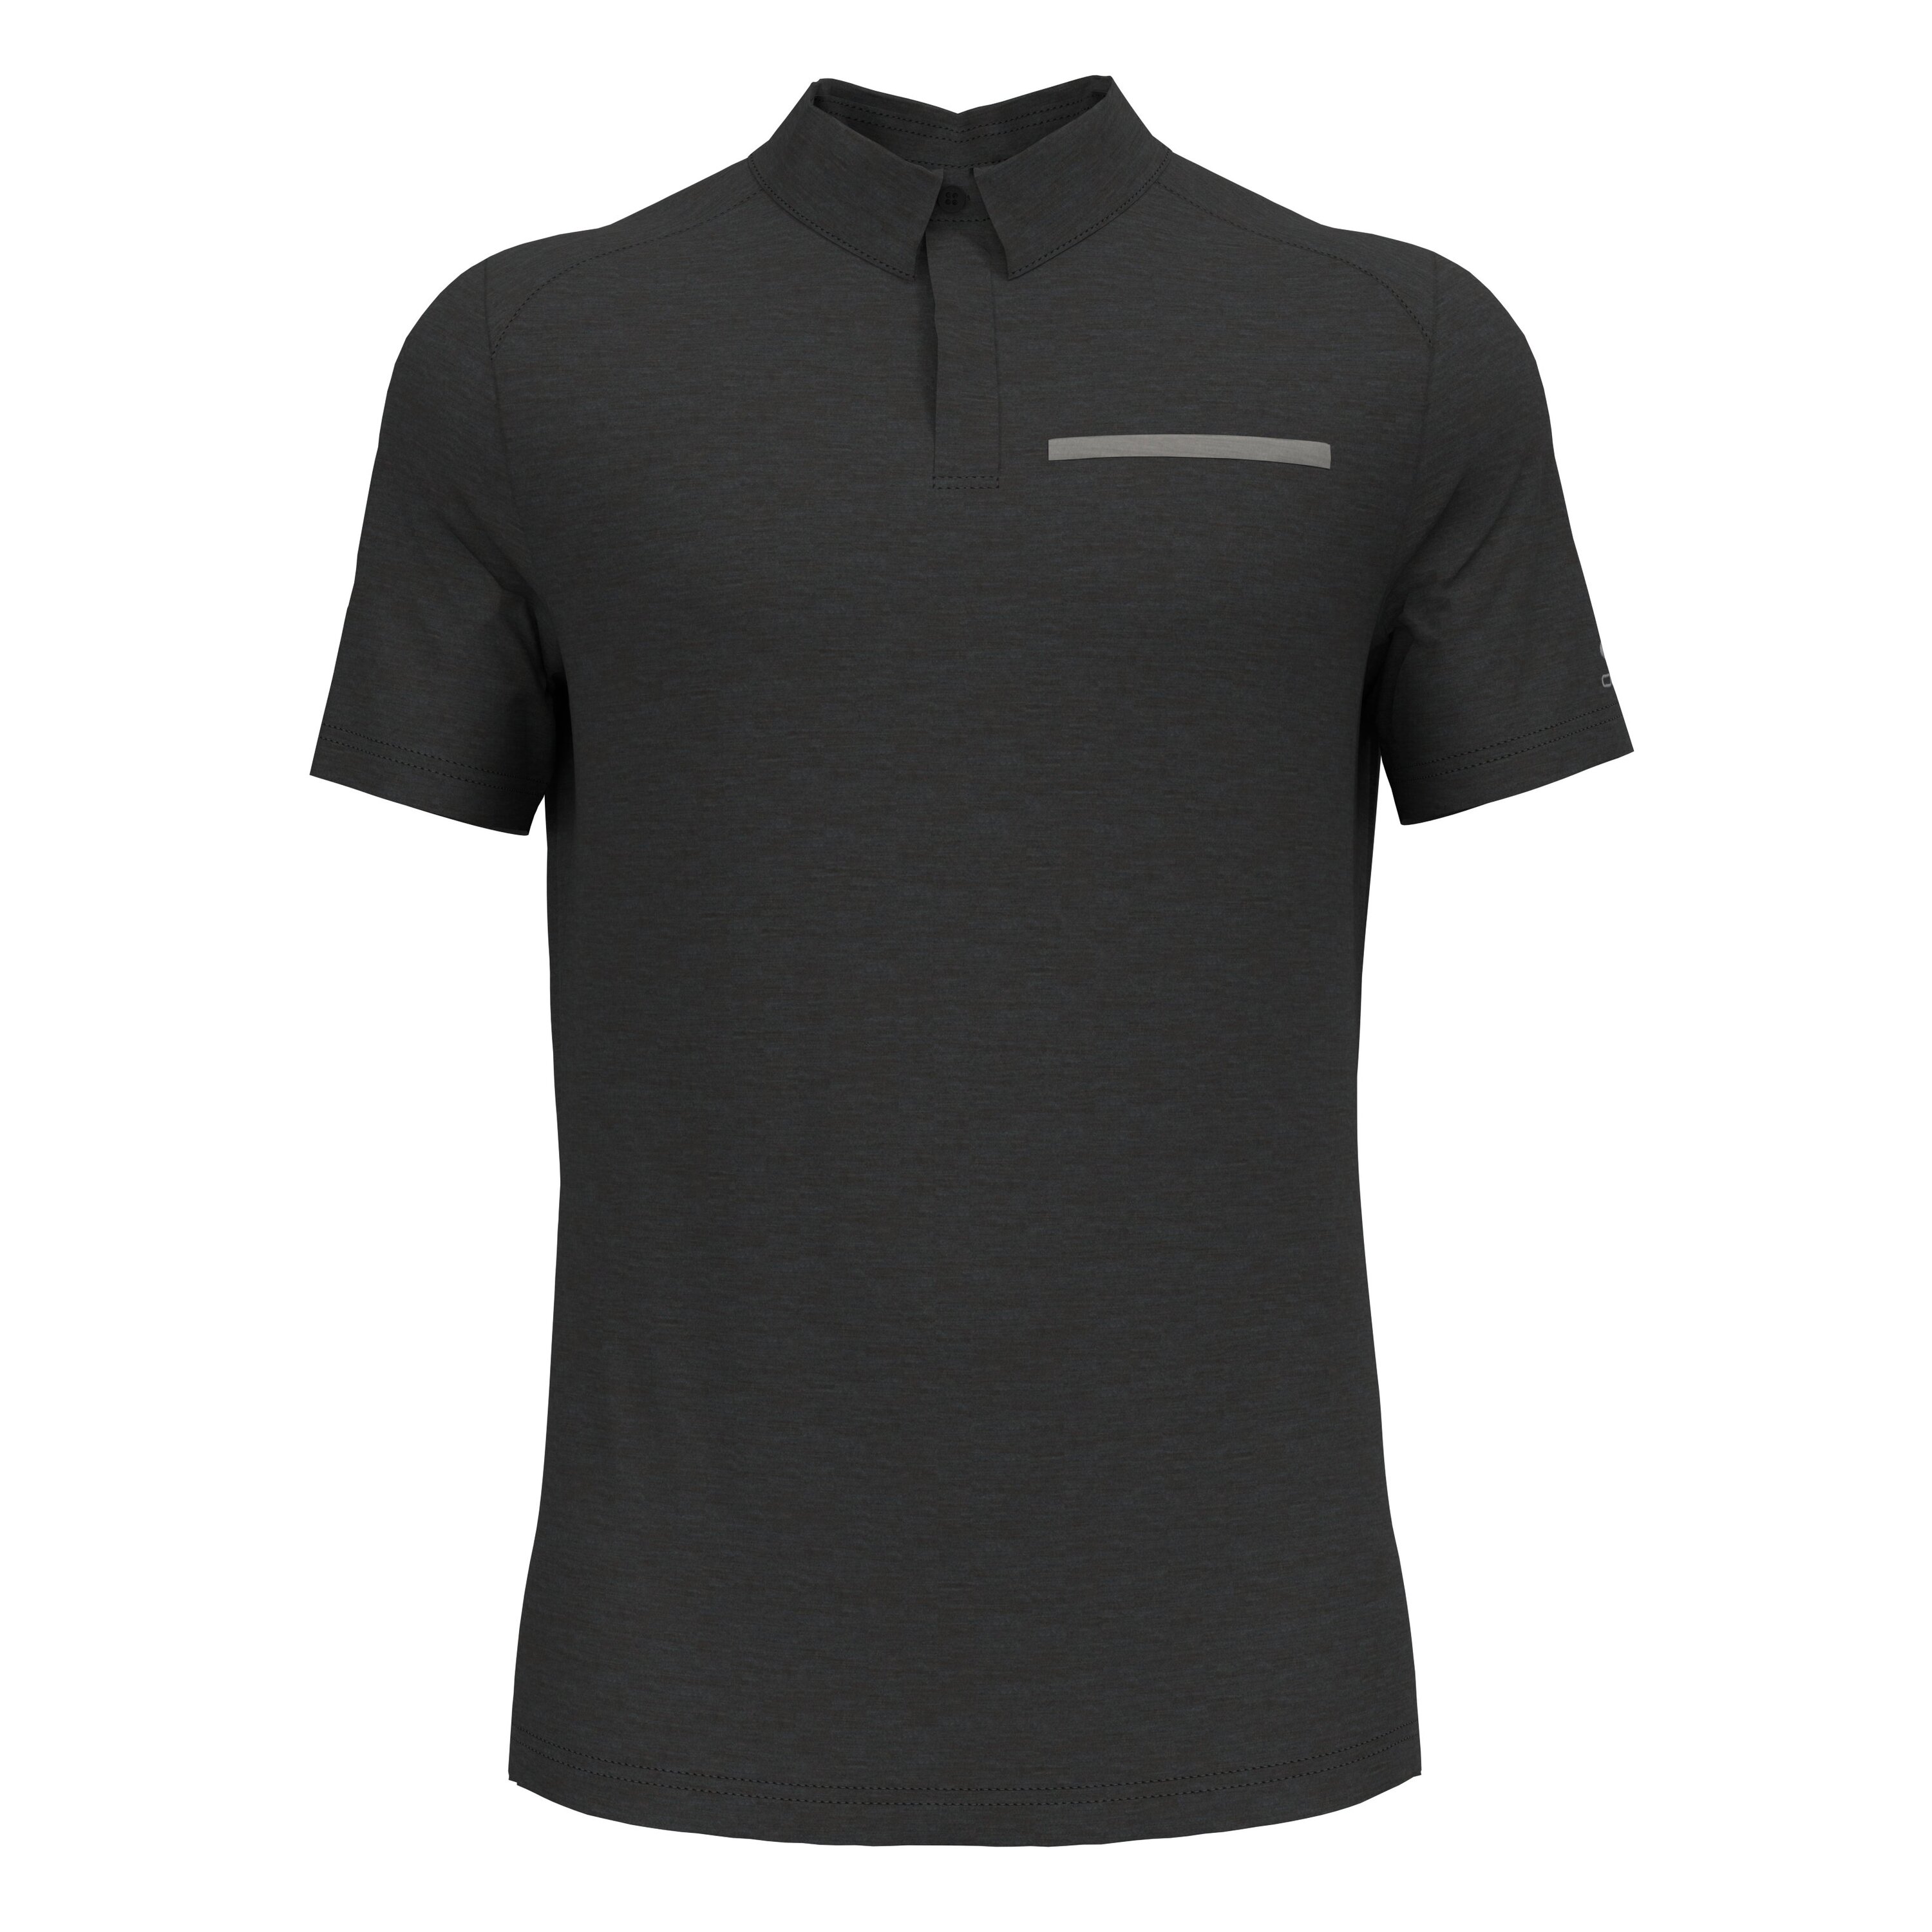 ODLO Essentials Performance Wool 130 Poloshirt für Herren, XL, schwarz